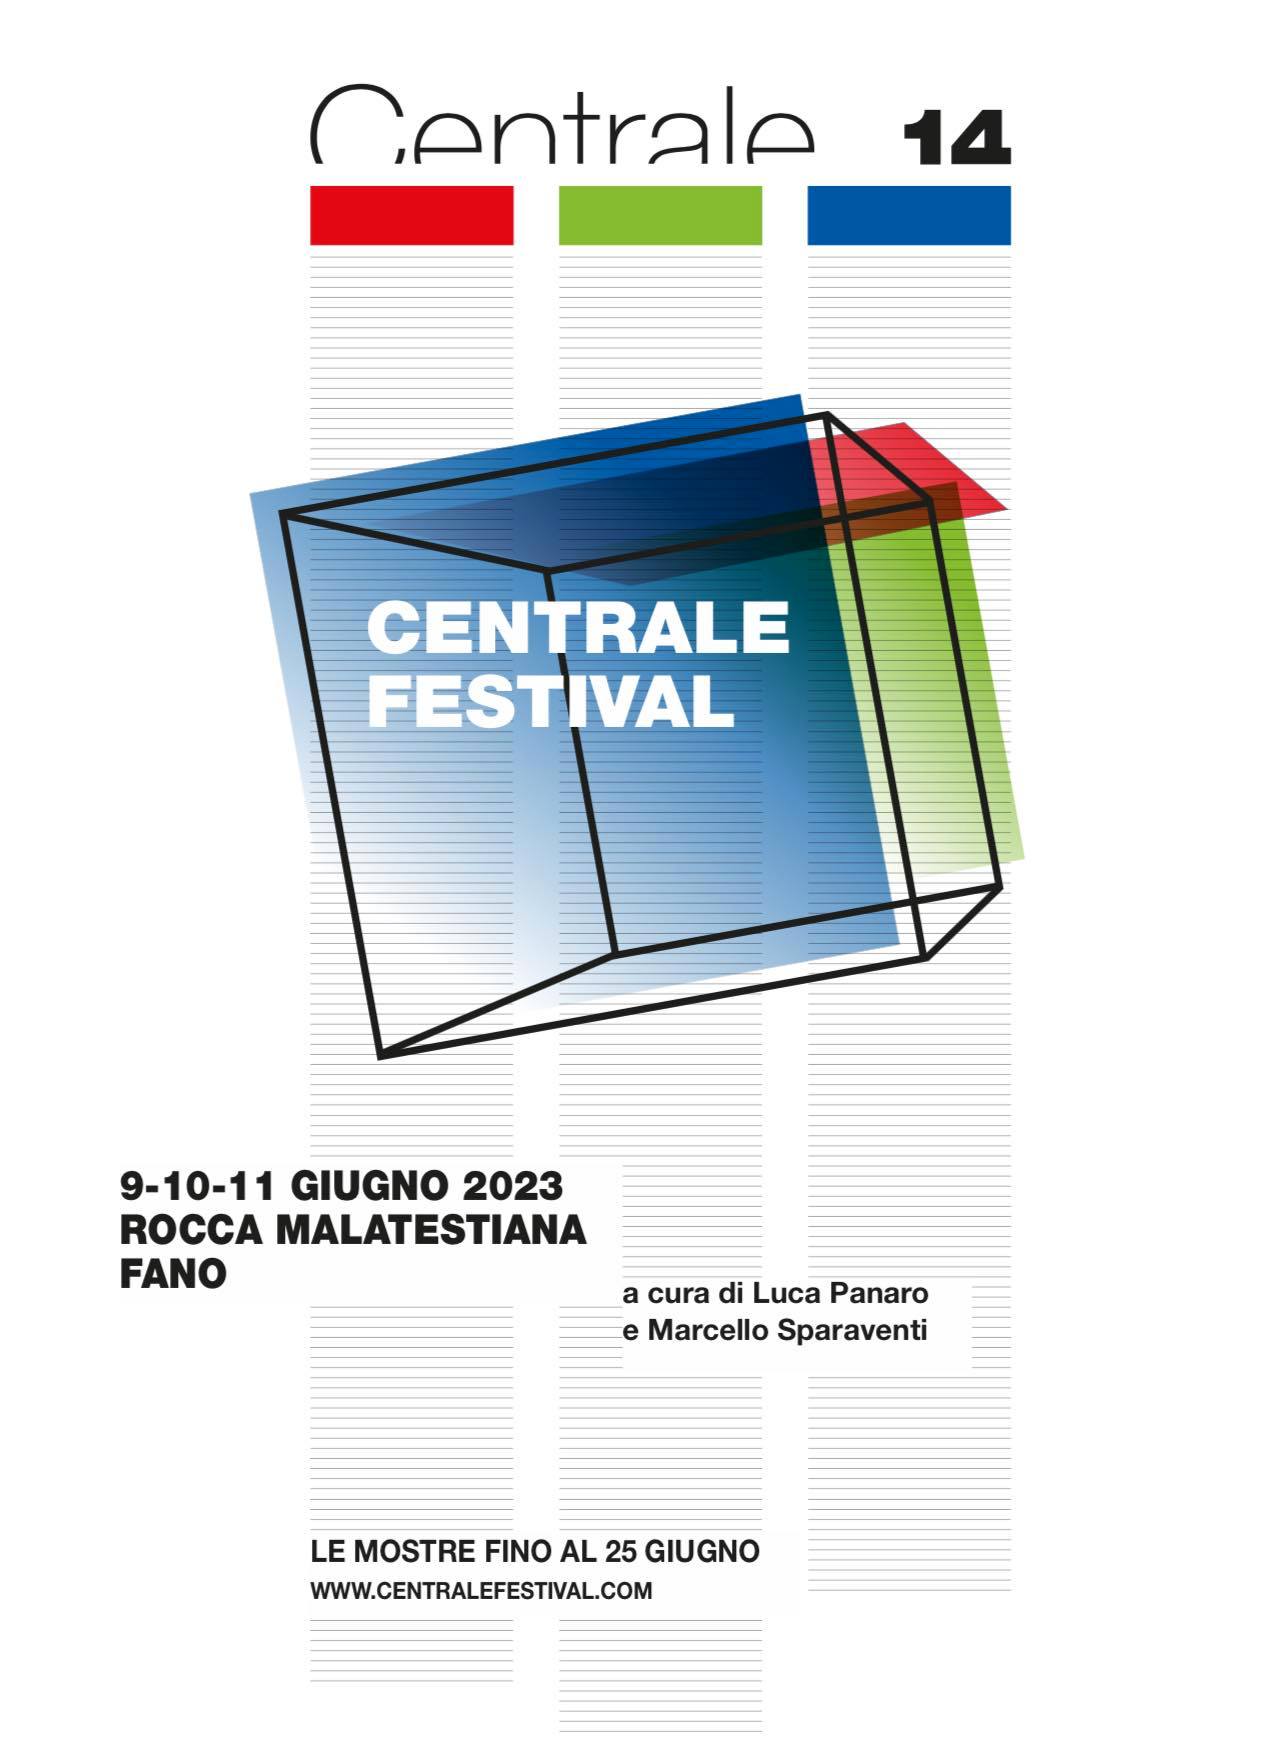 Centrale Festival Centrale Fotografia